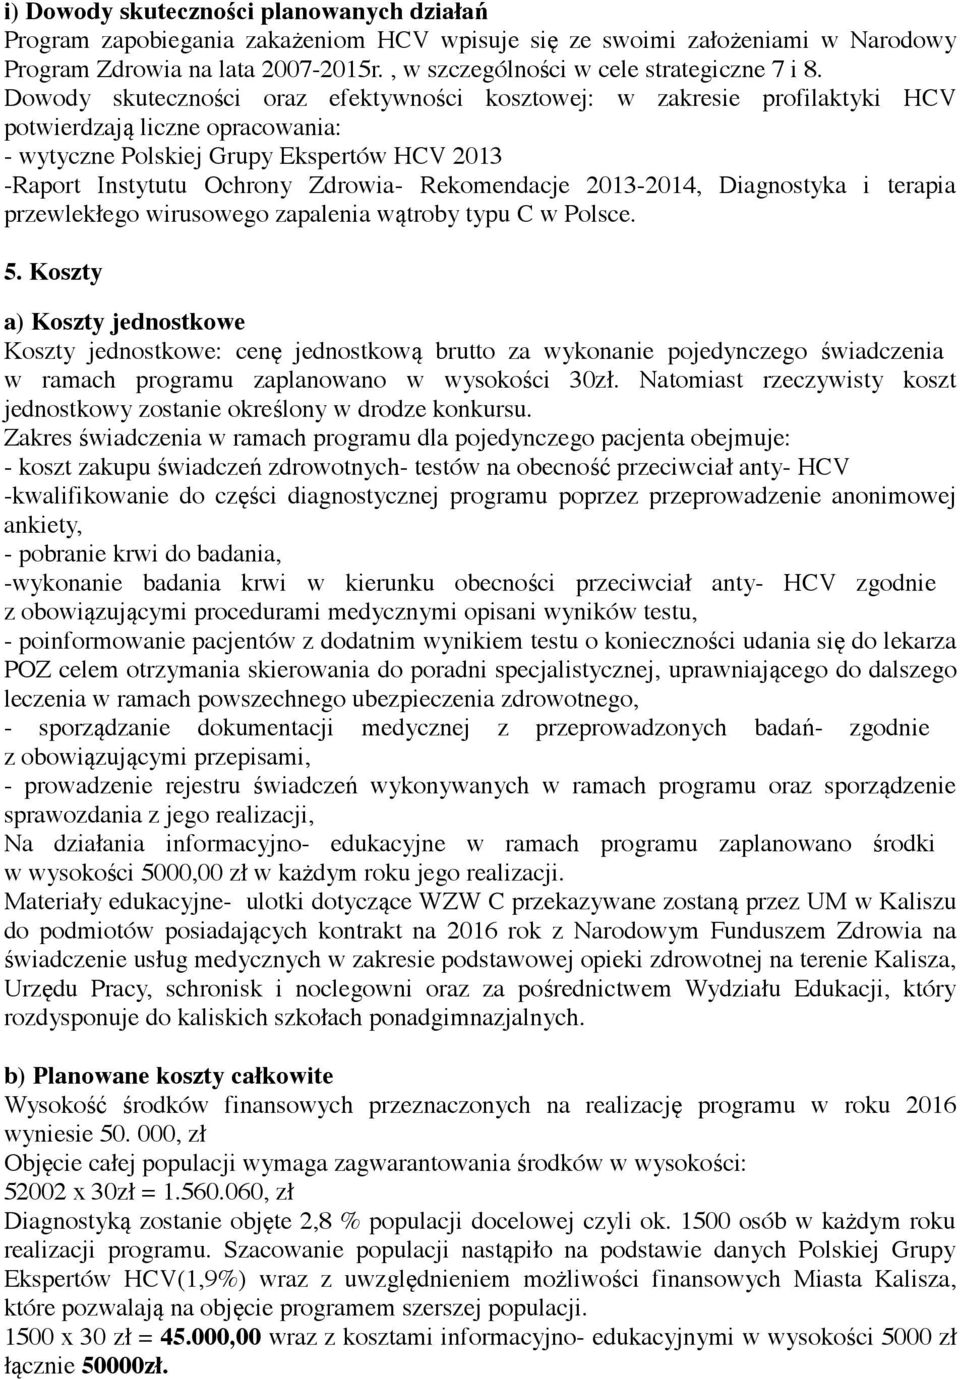 Dowody skuteczności oraz efektywności kosztowej: w zakresie profilaktyki HCV potwierdzają liczne opracowania: - wytyczne Polskiej Grupy Ekspertów HCV 2013 -Raport Instytutu Ochrony Zdrowia-